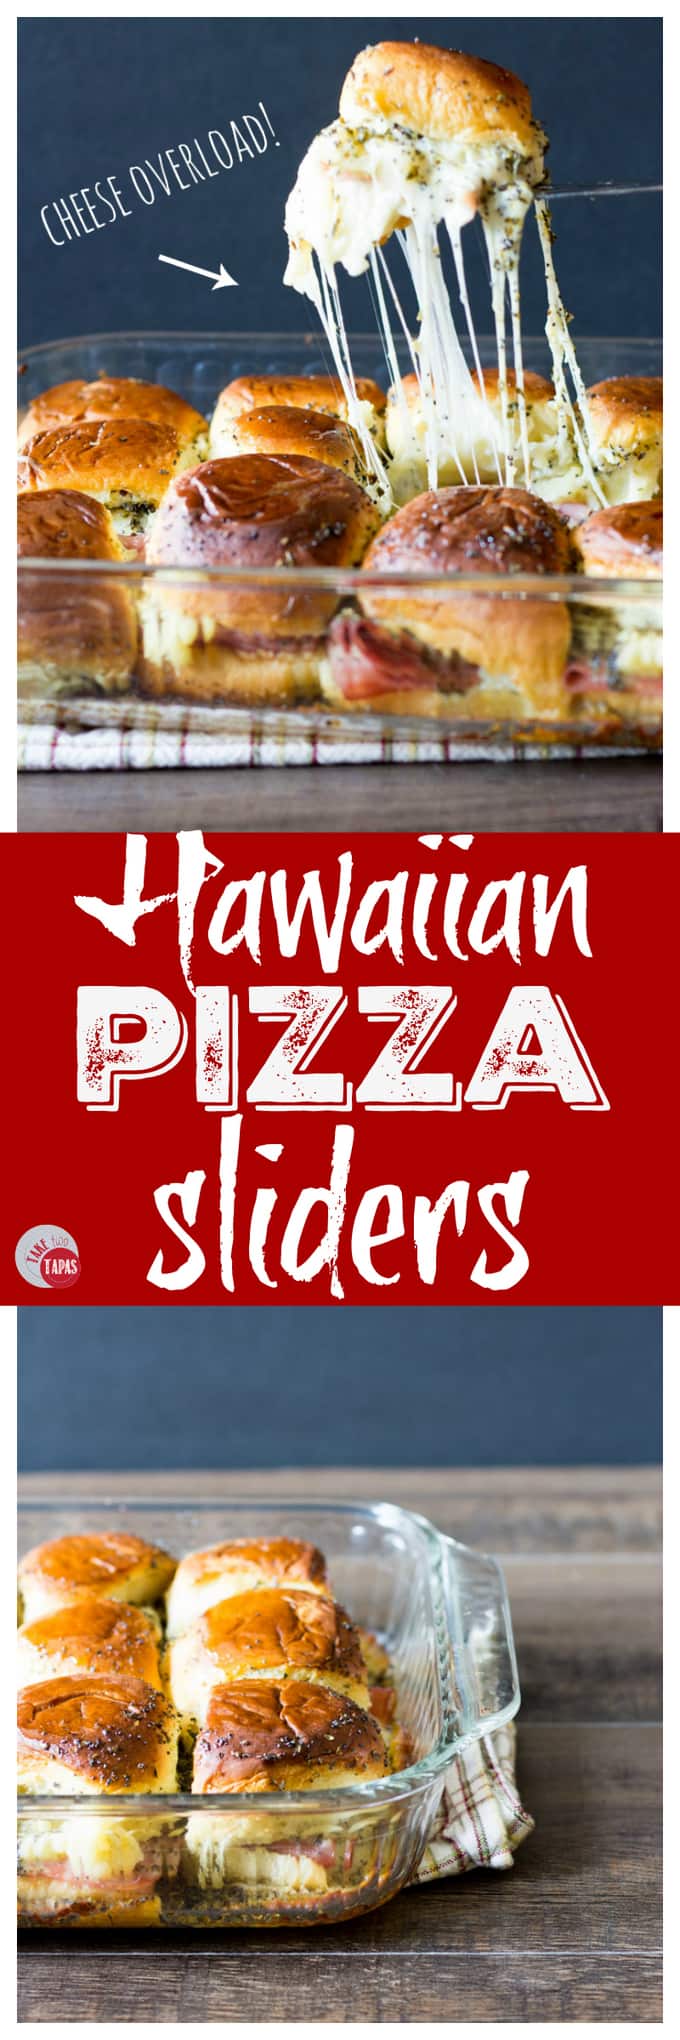 Hawaiian Pizza Sliders - Cheesy Hawaiian Roll Pizza Sandwiches